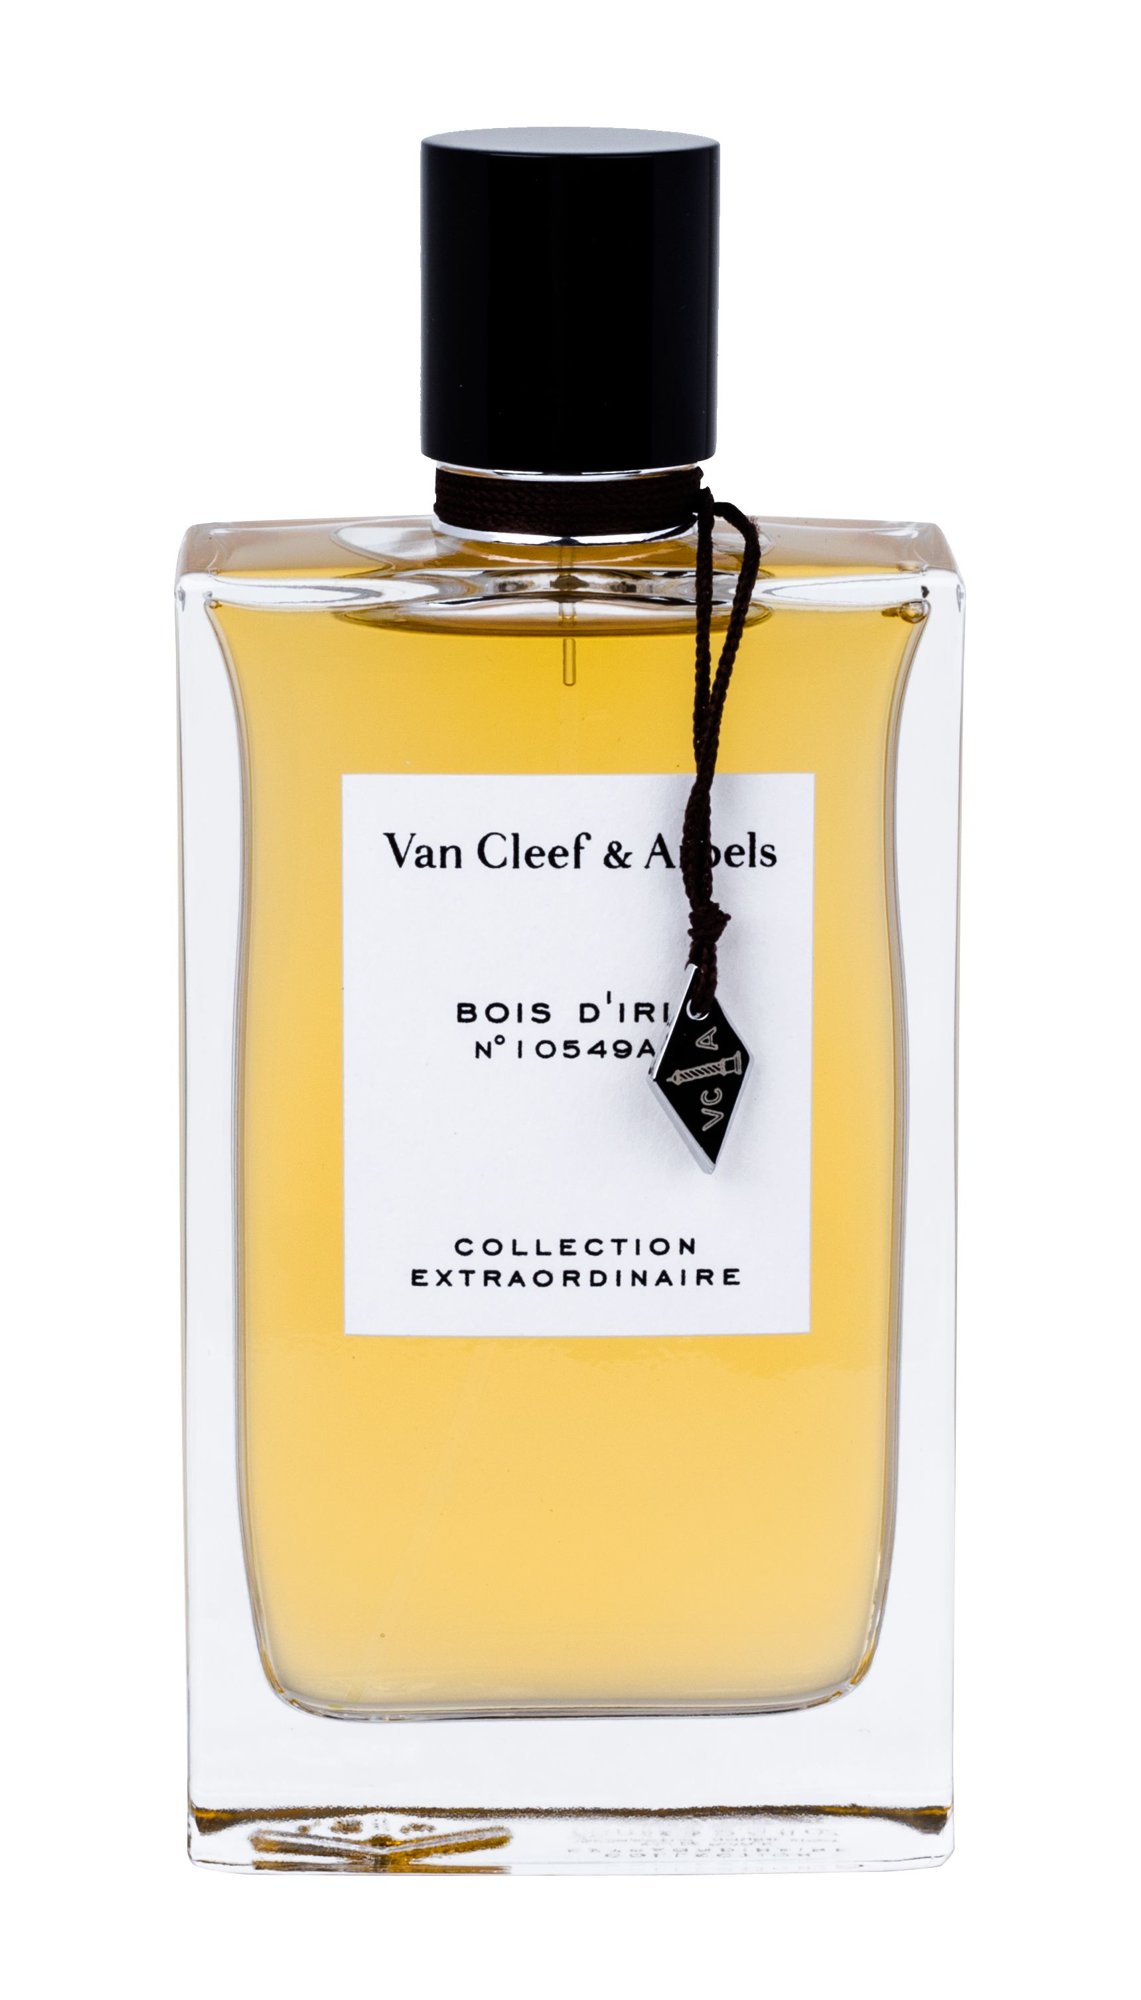 Van Cleef & Arpels Collection Extraordinaire Bois d´Iris